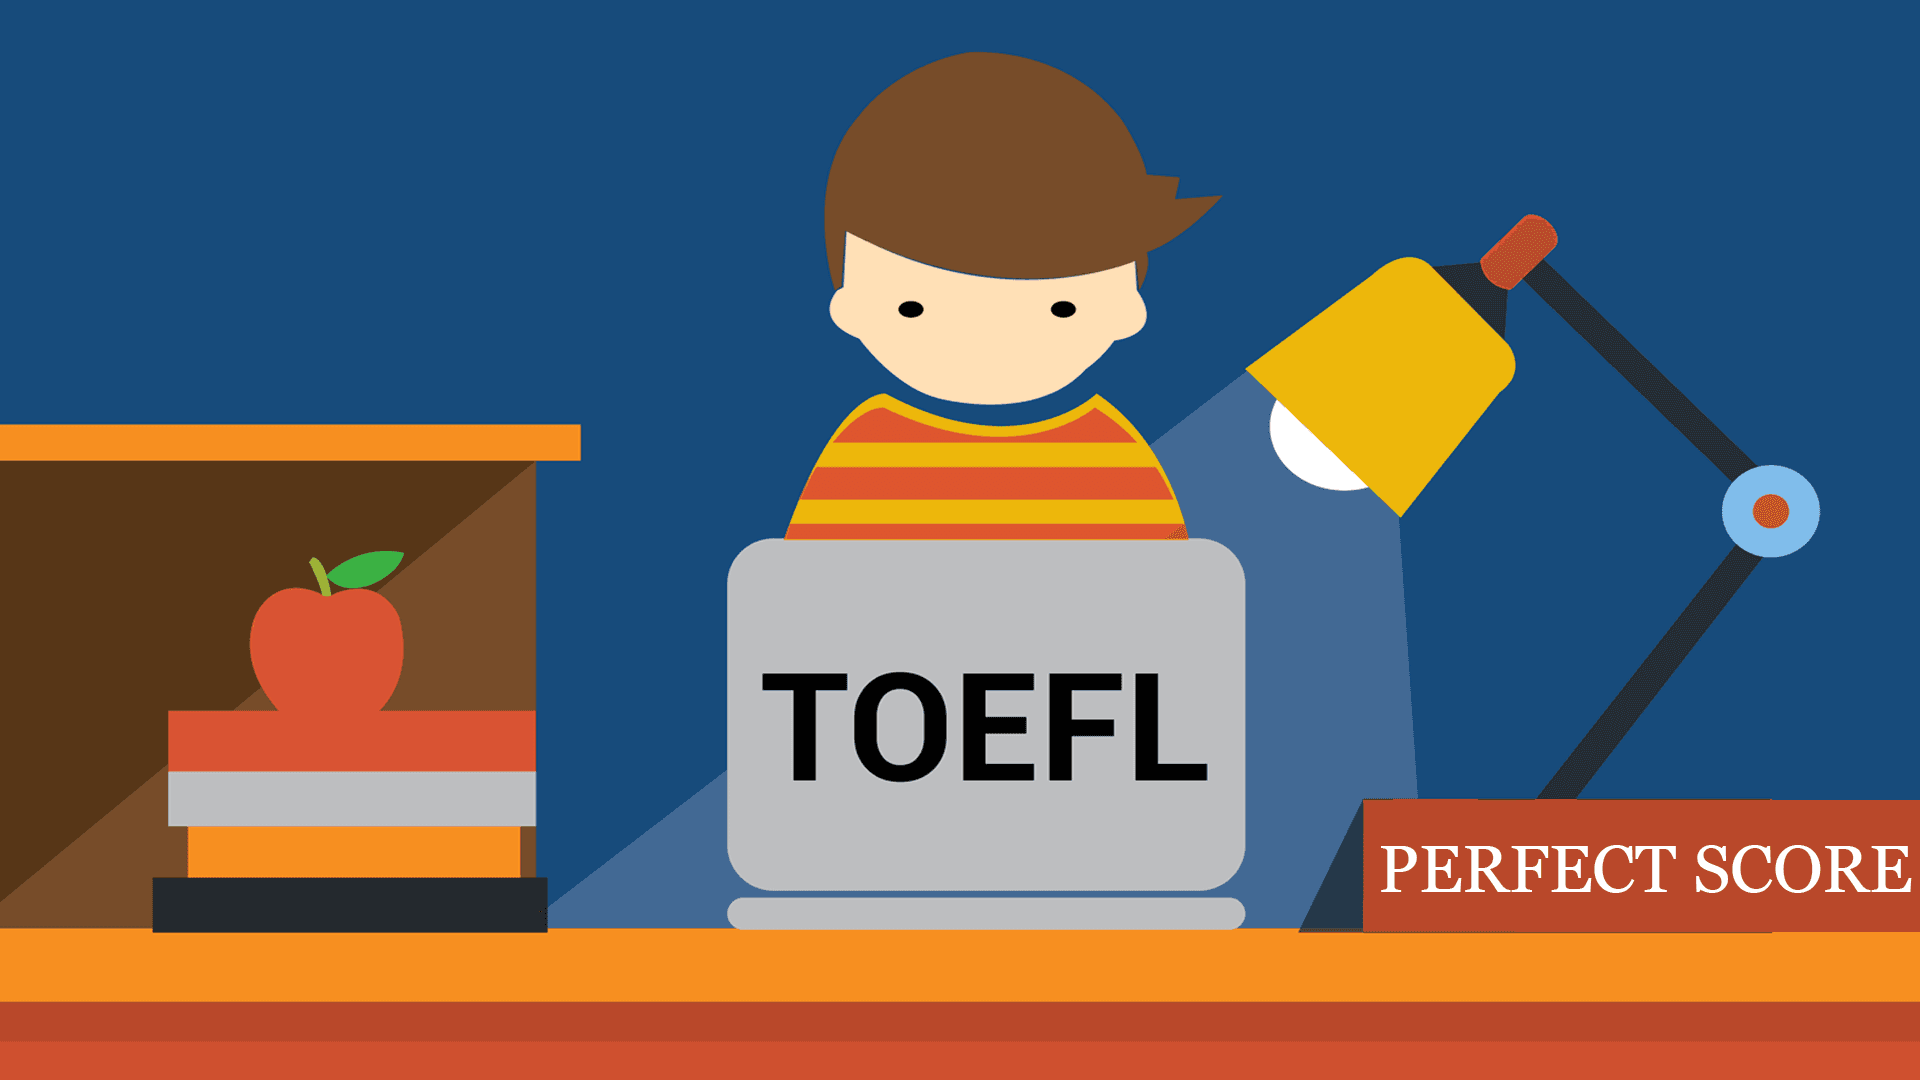 اختبار التوفل TOEFL كل ما تريد معرفته عنه وأهم الأسئلة الشائعة بخصوصه